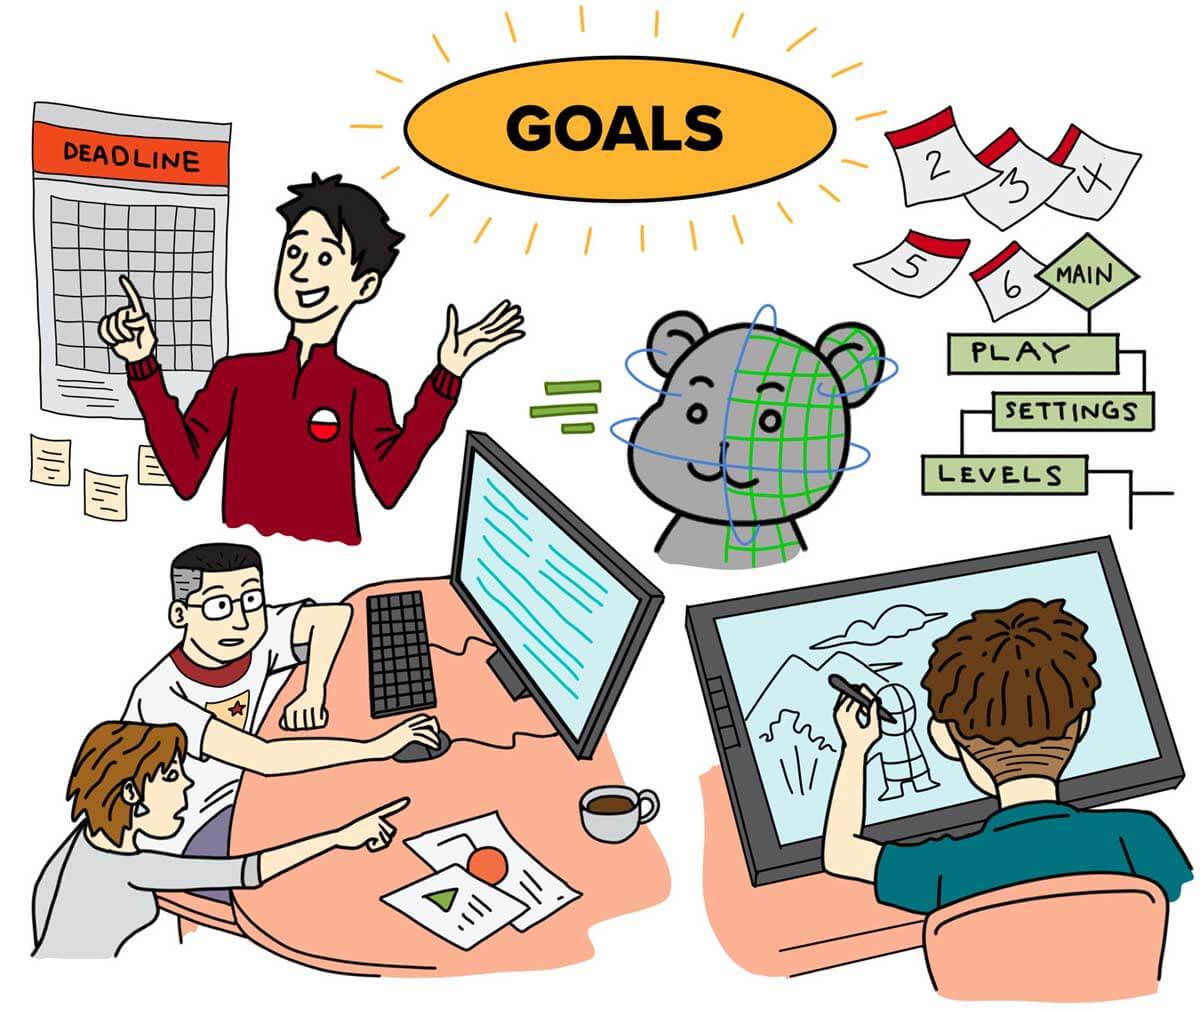 Estudiantes enfocados en diversos objetivos, incluido un estudiante mirando un calendario, otro estudiante dibujando y dos estudiantes usando una computadora.